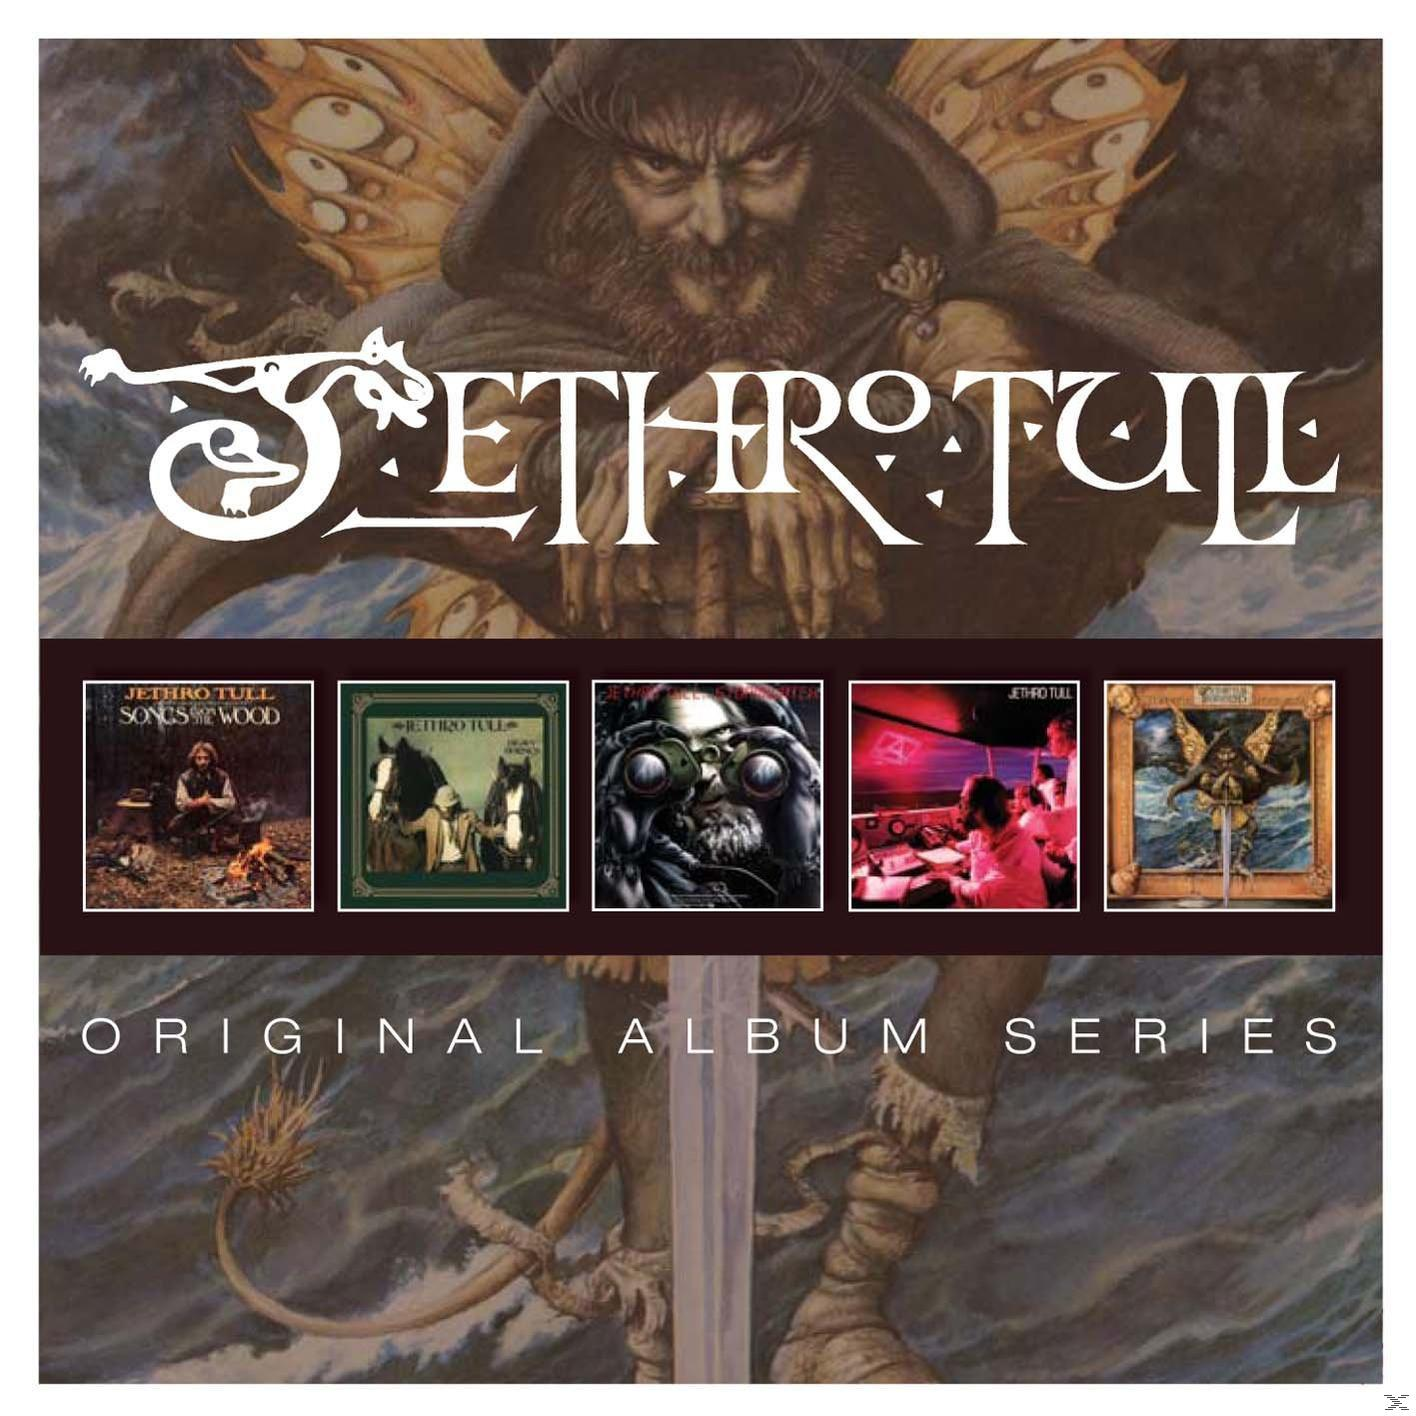 Album Series (CD) (5 Jethro - Cd - Original Box) Tull